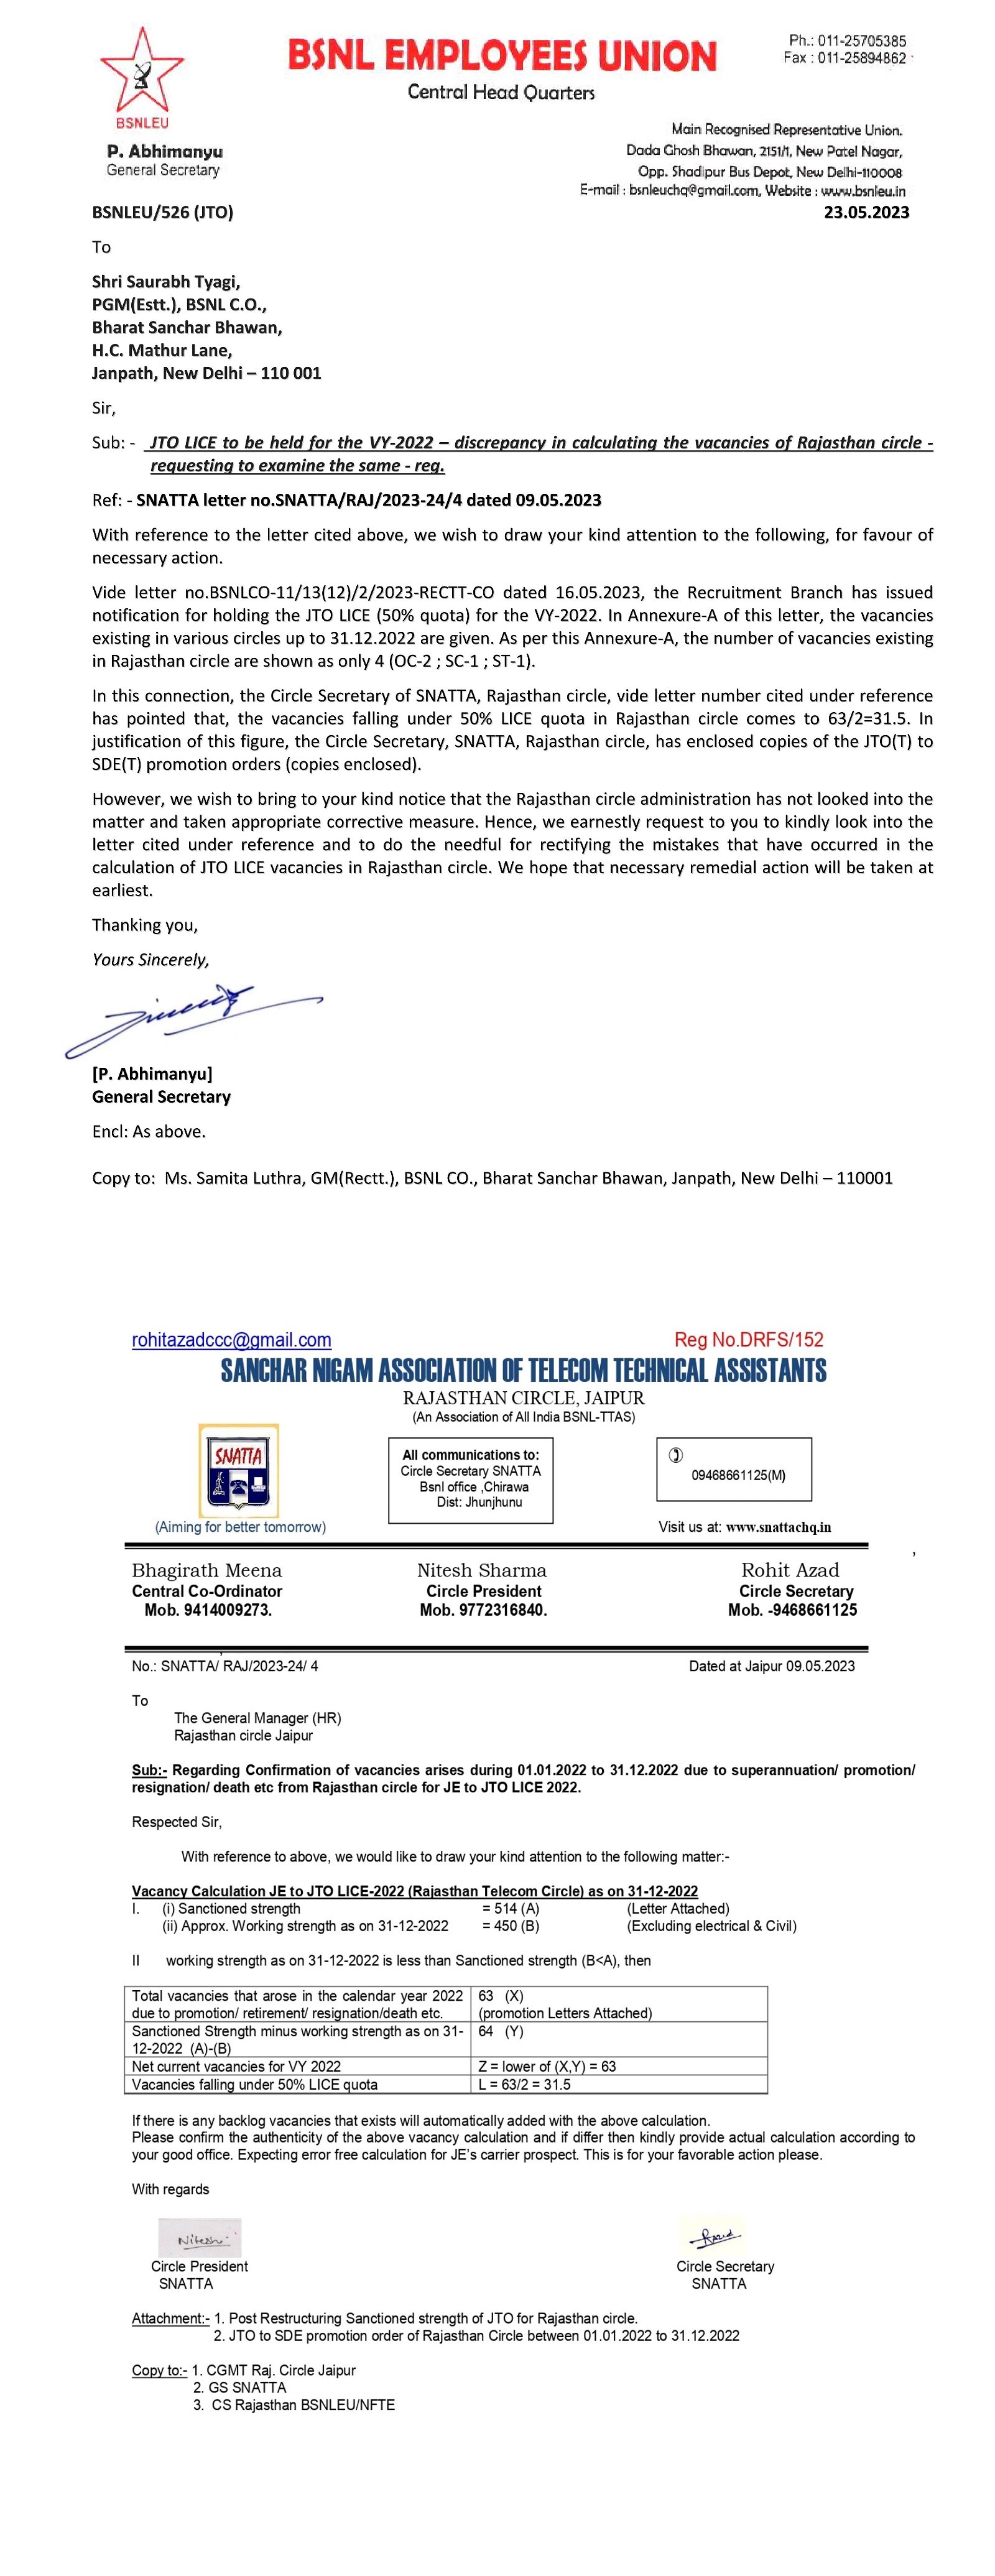 *राजस्थान सर्कलमधील JTO LICE साठी पोस्टची चुकीची गणना – BSNLEU PGM(Est.) ला पत्र लिहिते.* Image 